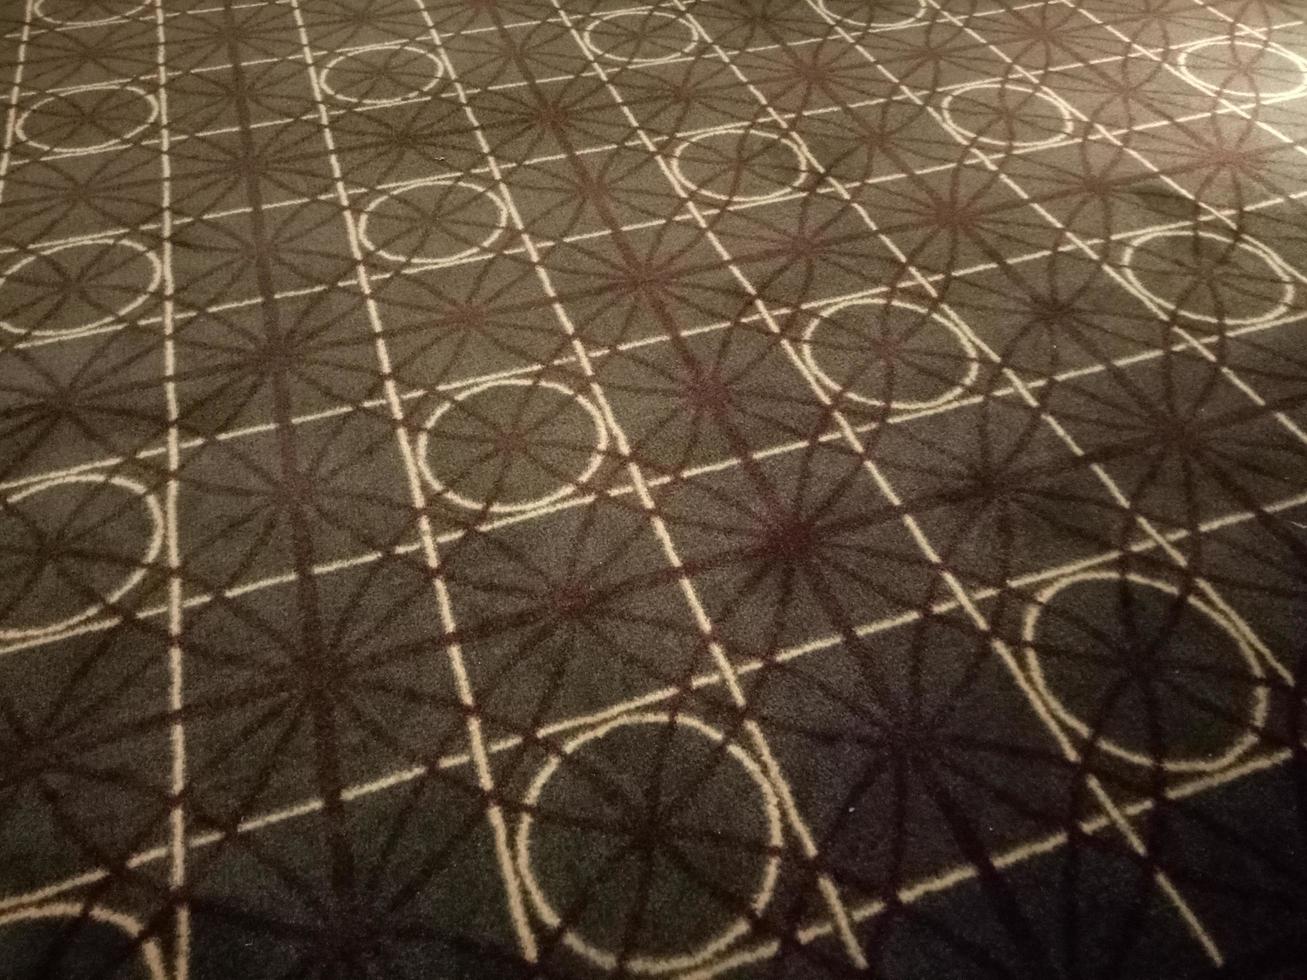 tappeto marrone scuro con motivo circolare e quadrato nella stanza foto